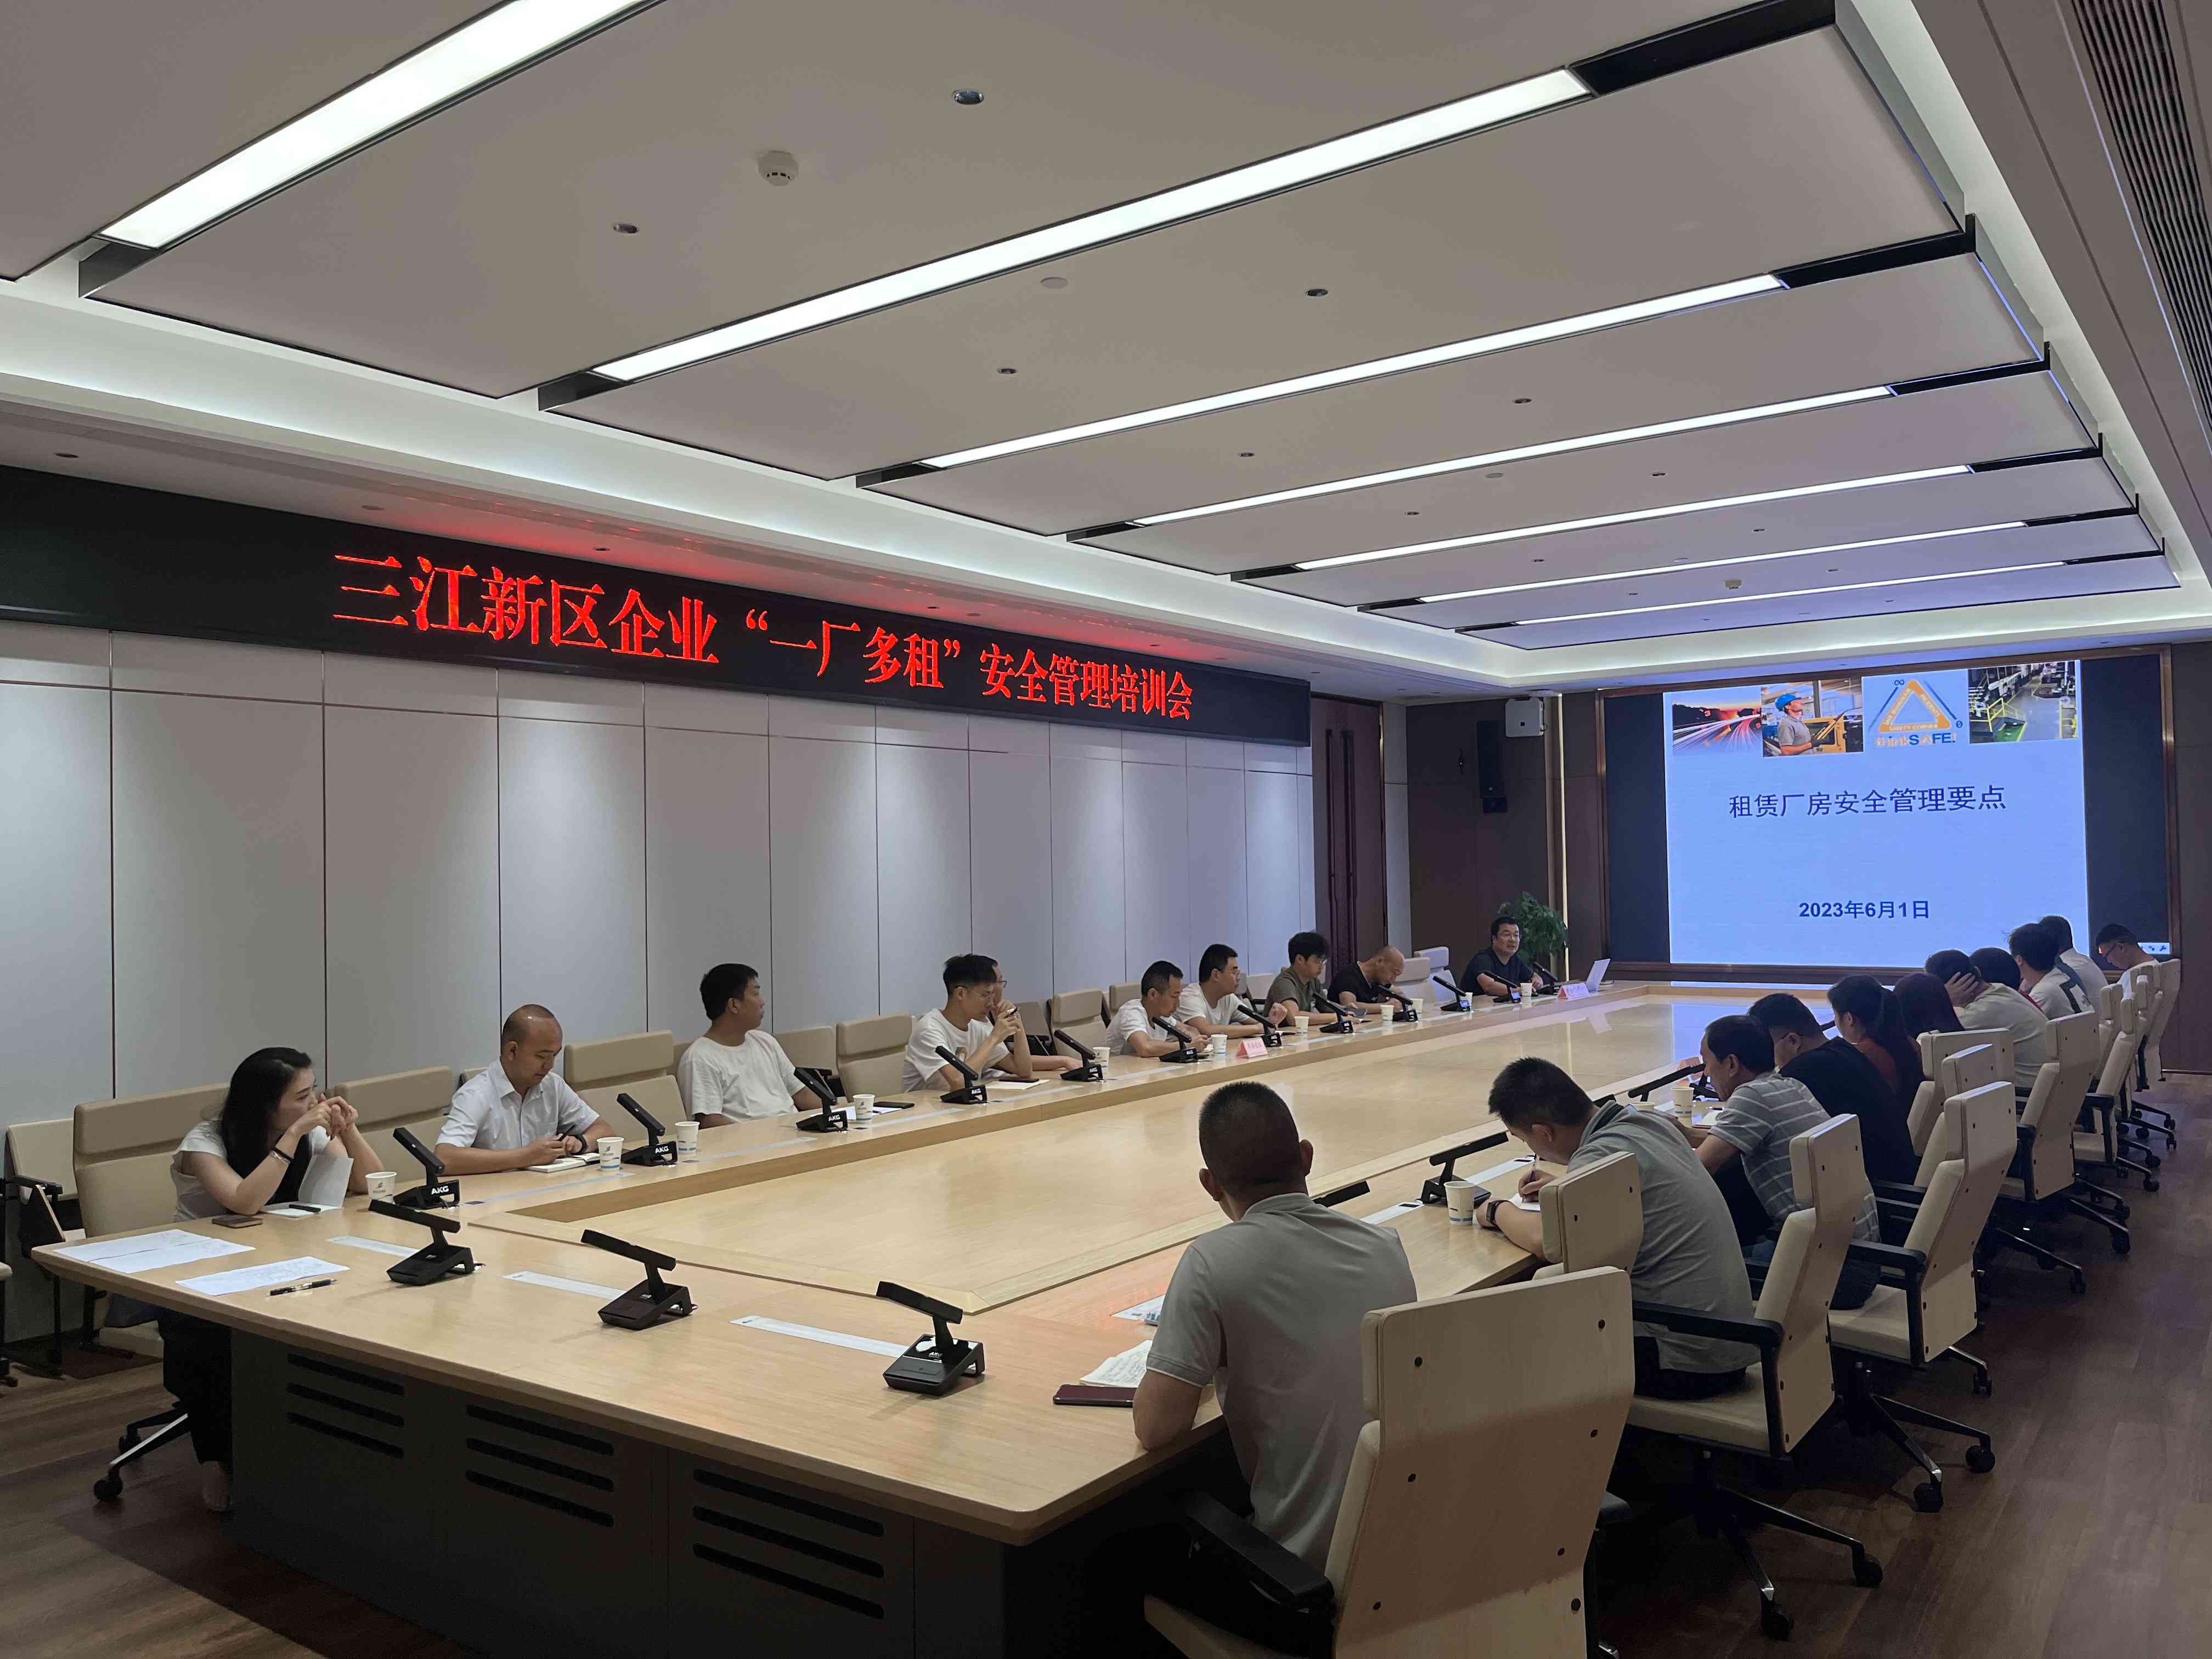 三江新区工业和服务业局 举办区内企业“一厂多租”安全管理培训会